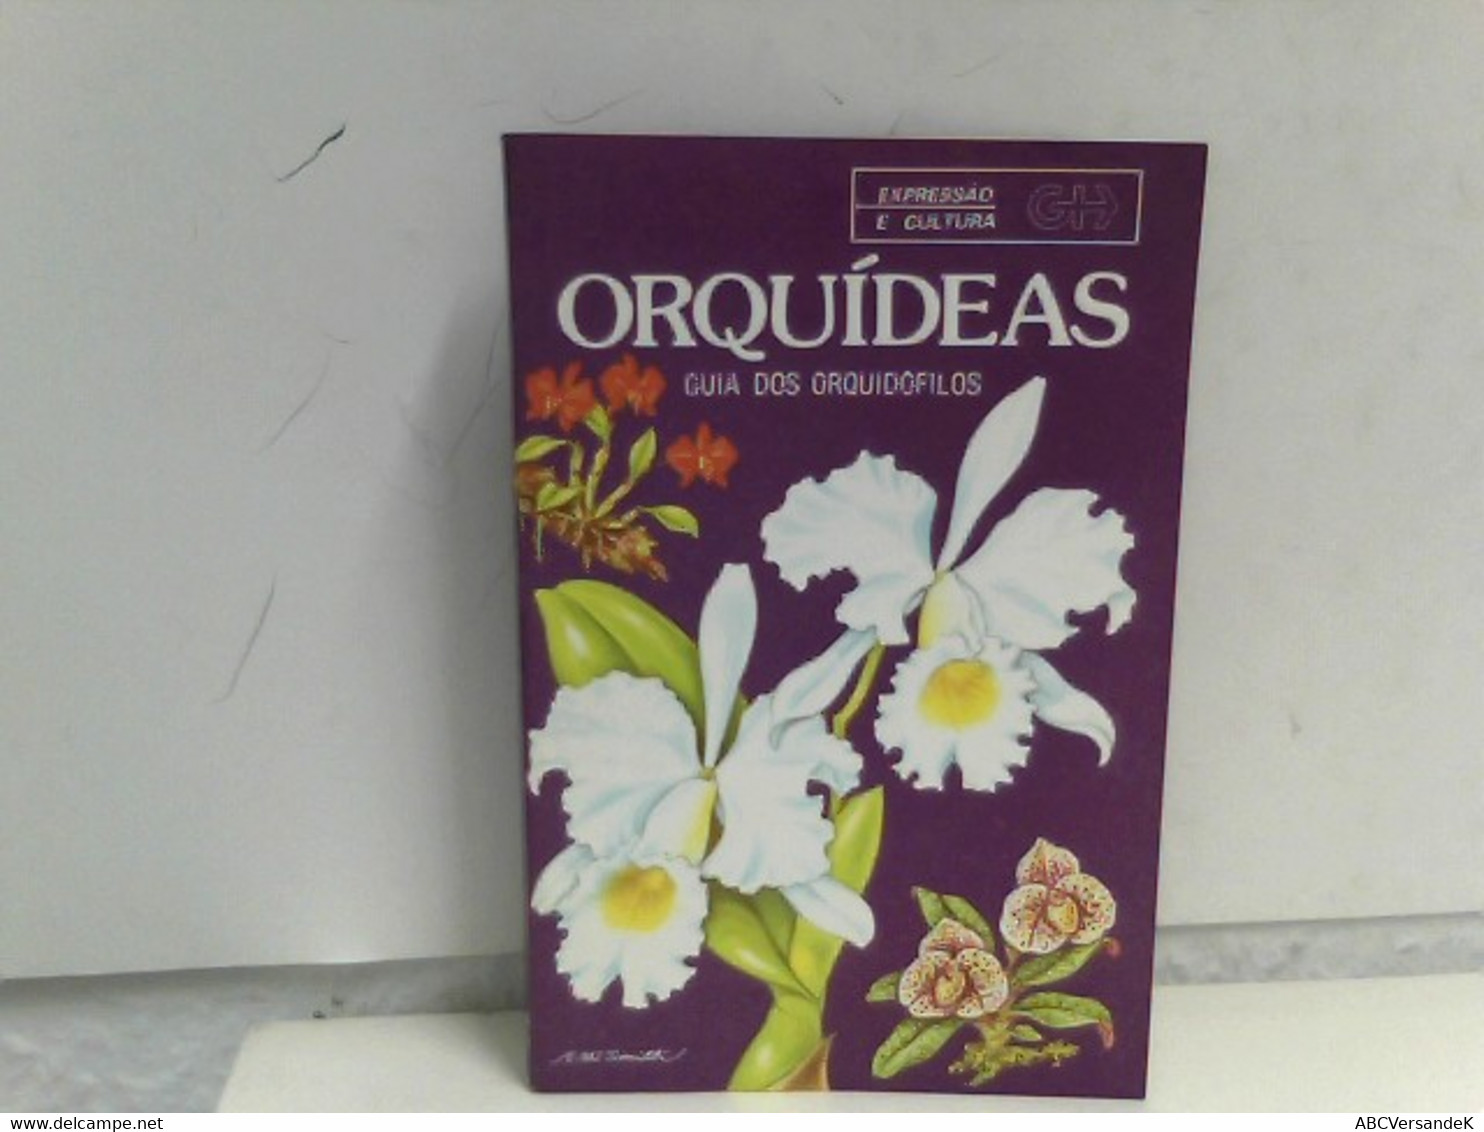 Orquideas - Guia Dos Orquidofilos - Nature